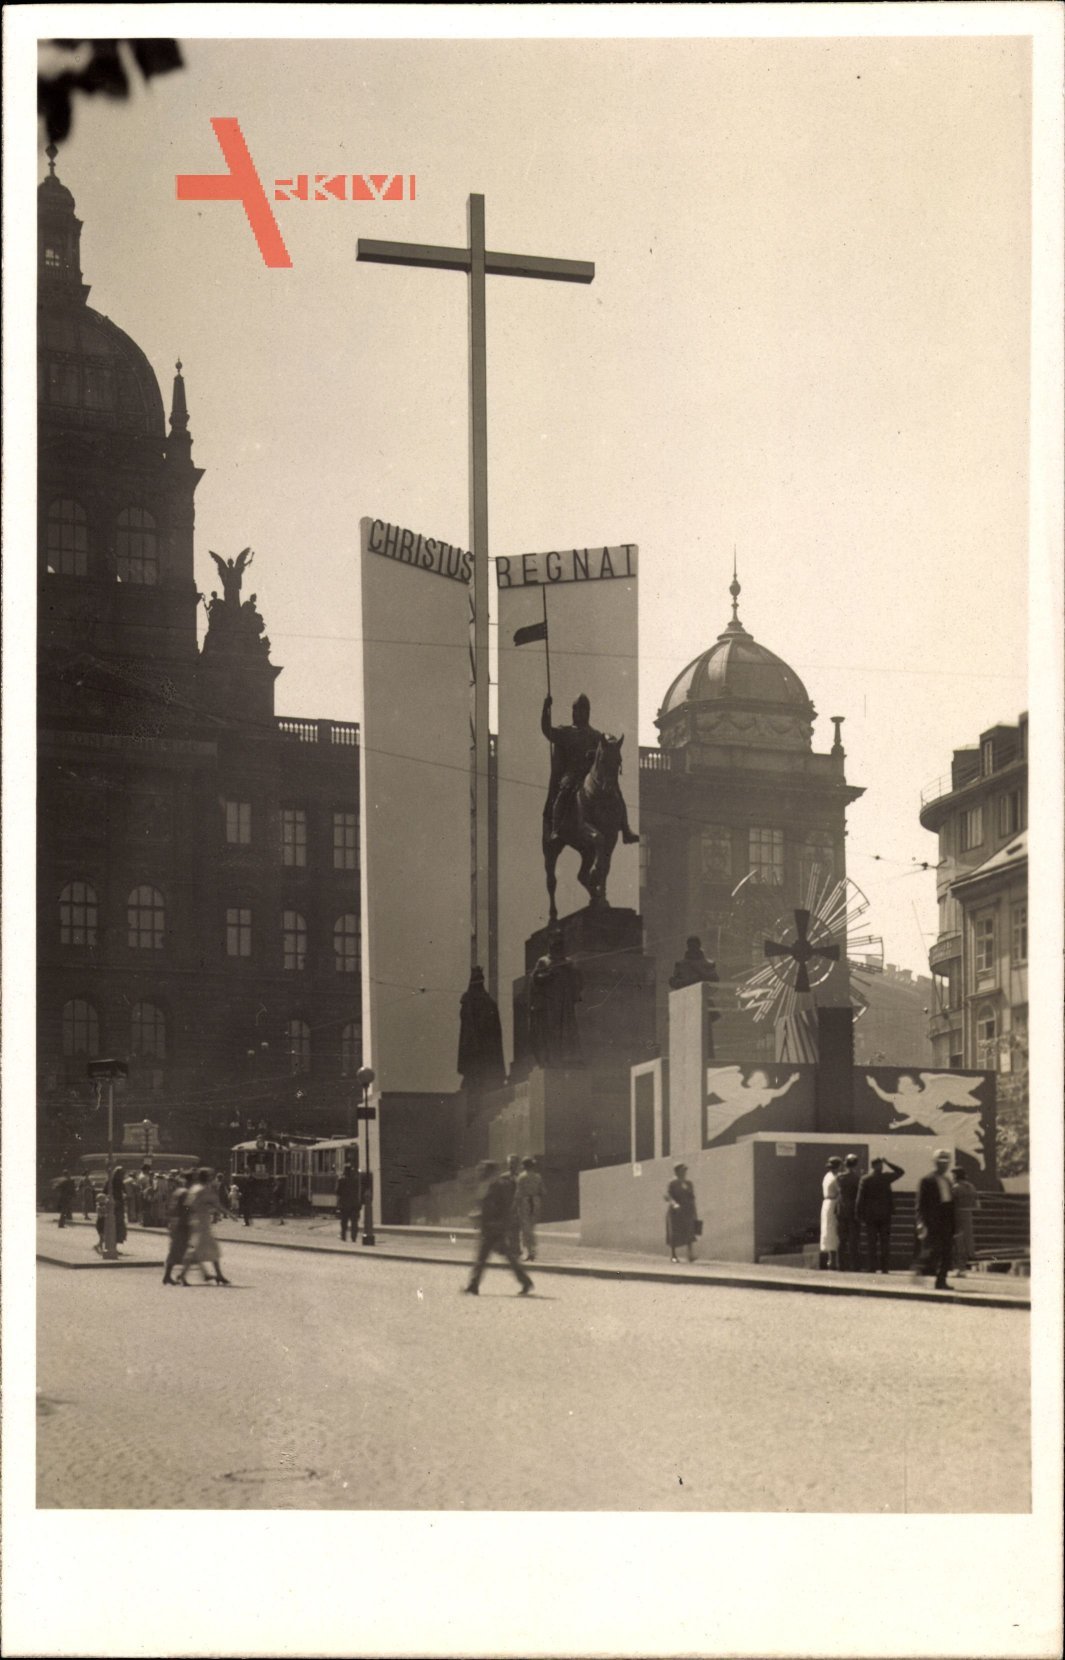 Praha Prag Tschechien, Straßenpartie mit Denkmal, Christus Regnai, Kreuz